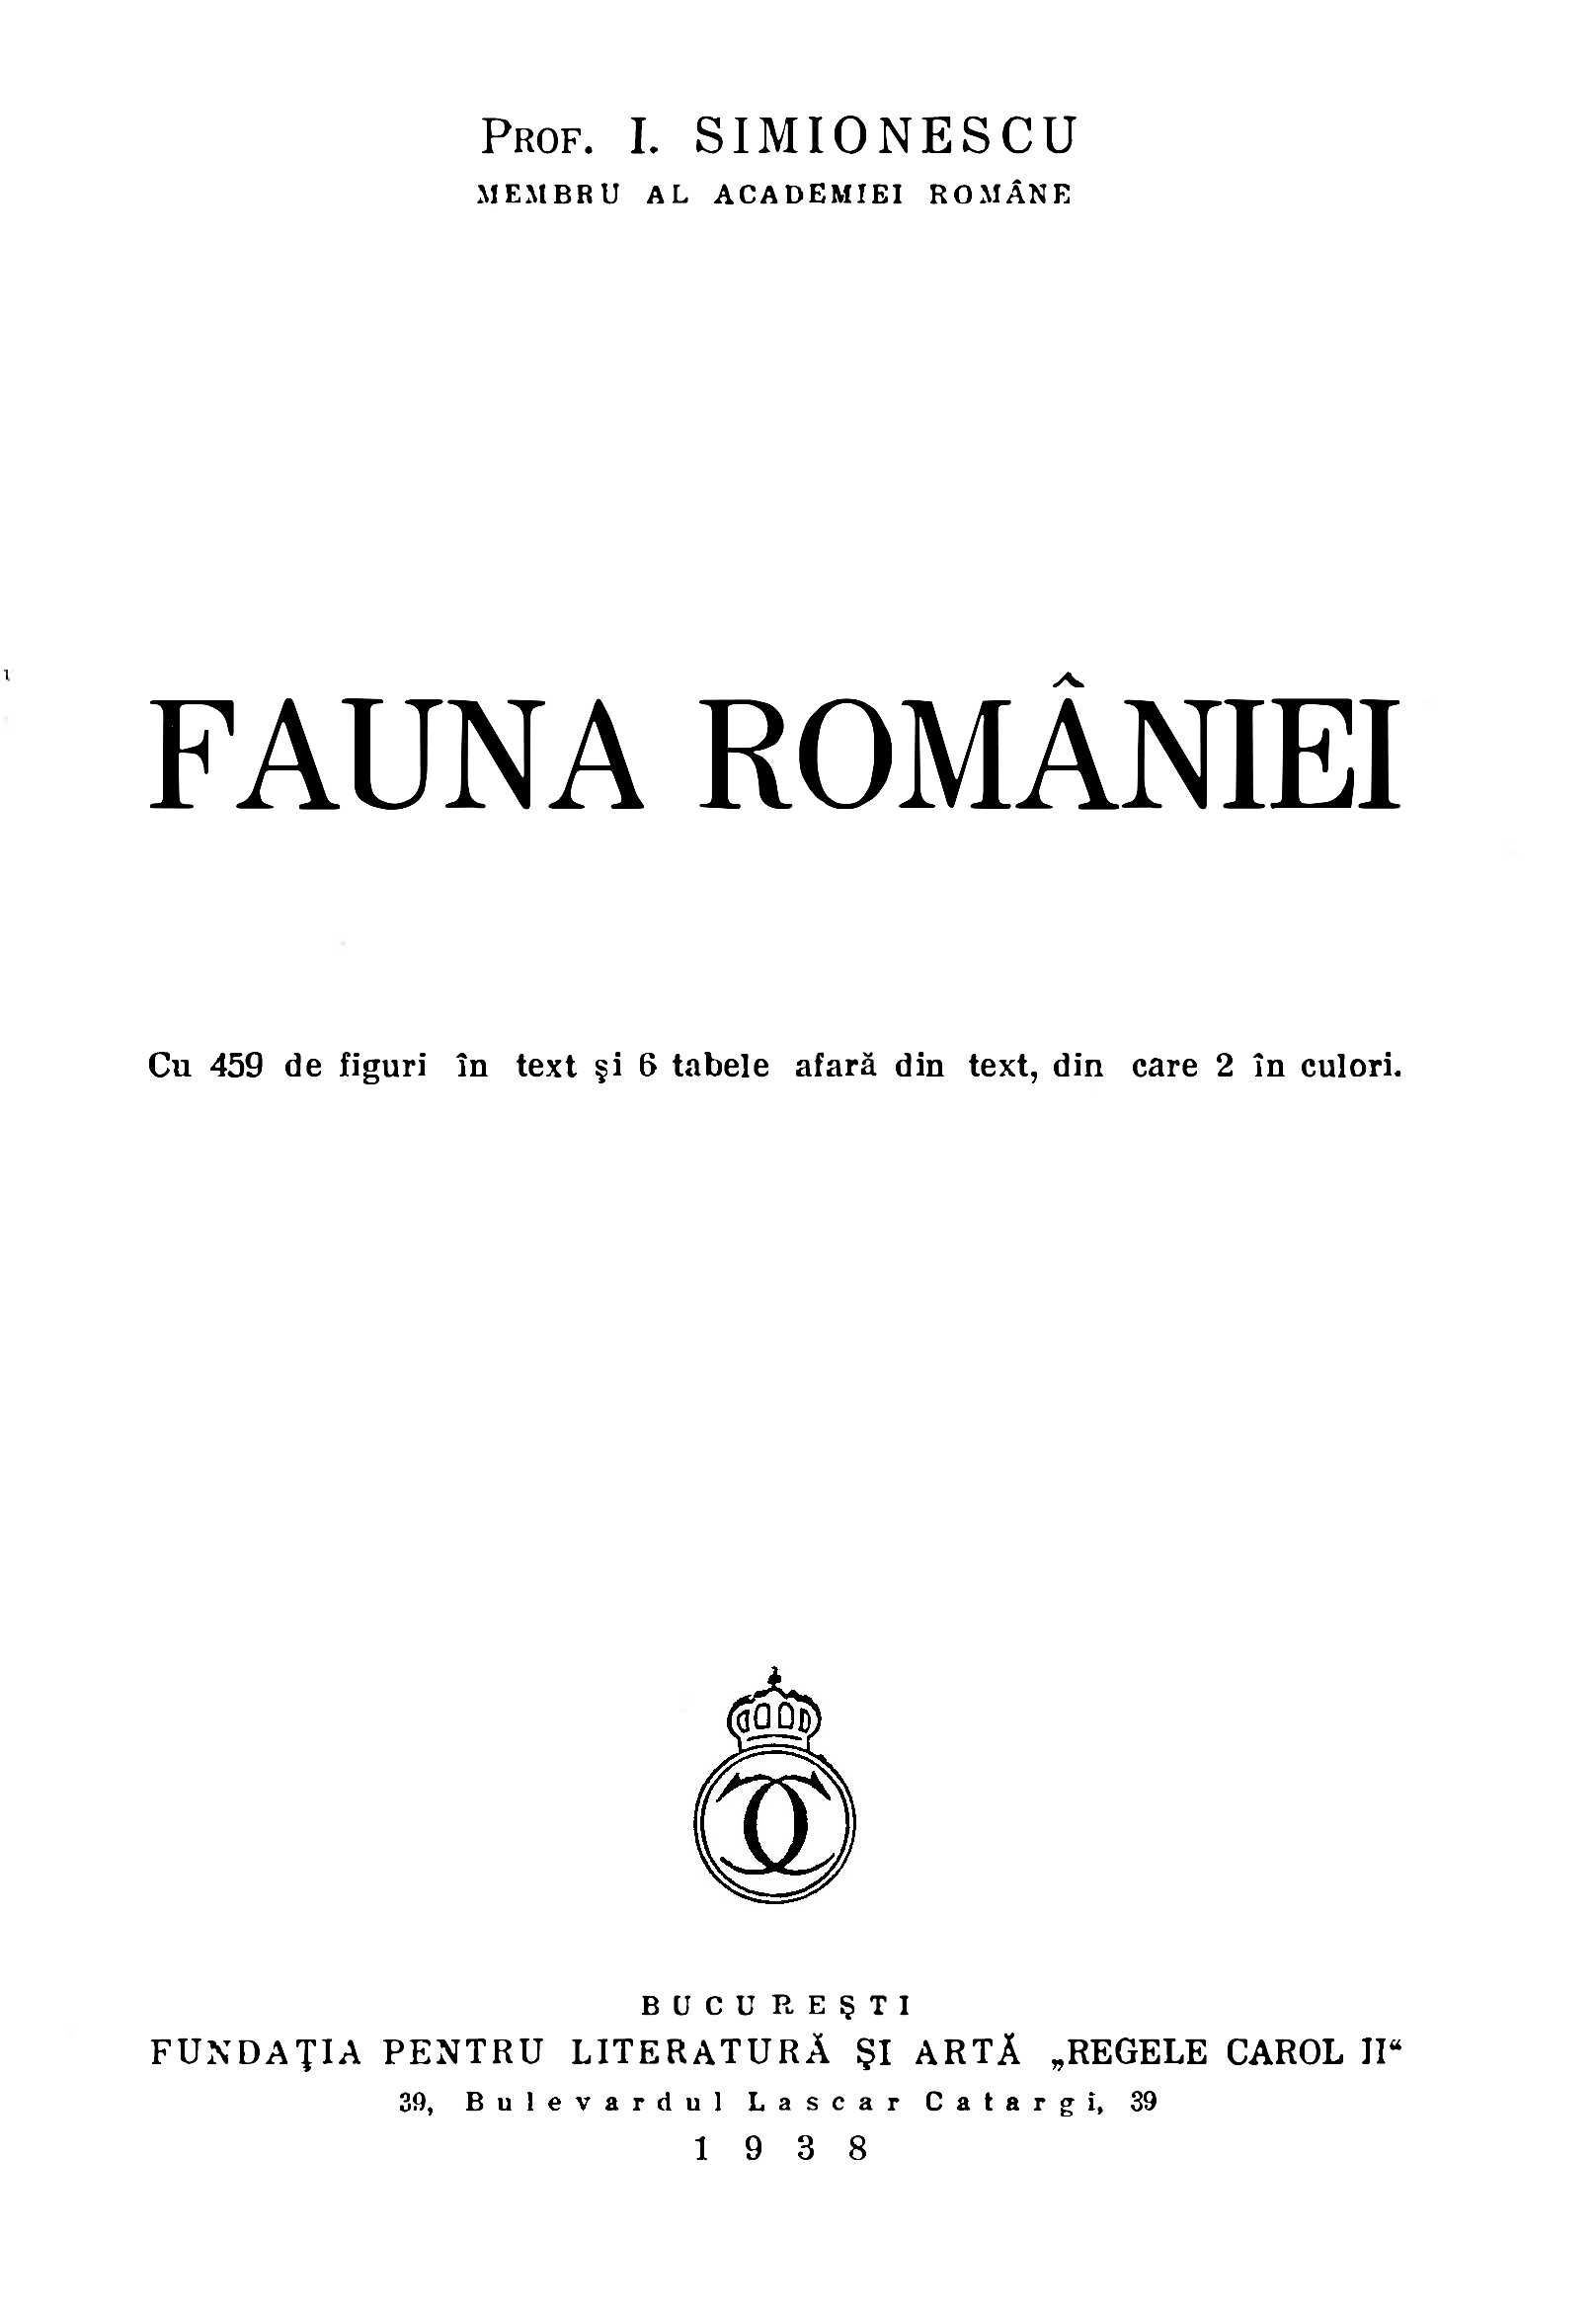 Fauna României - Simionescu - ediţia 1938